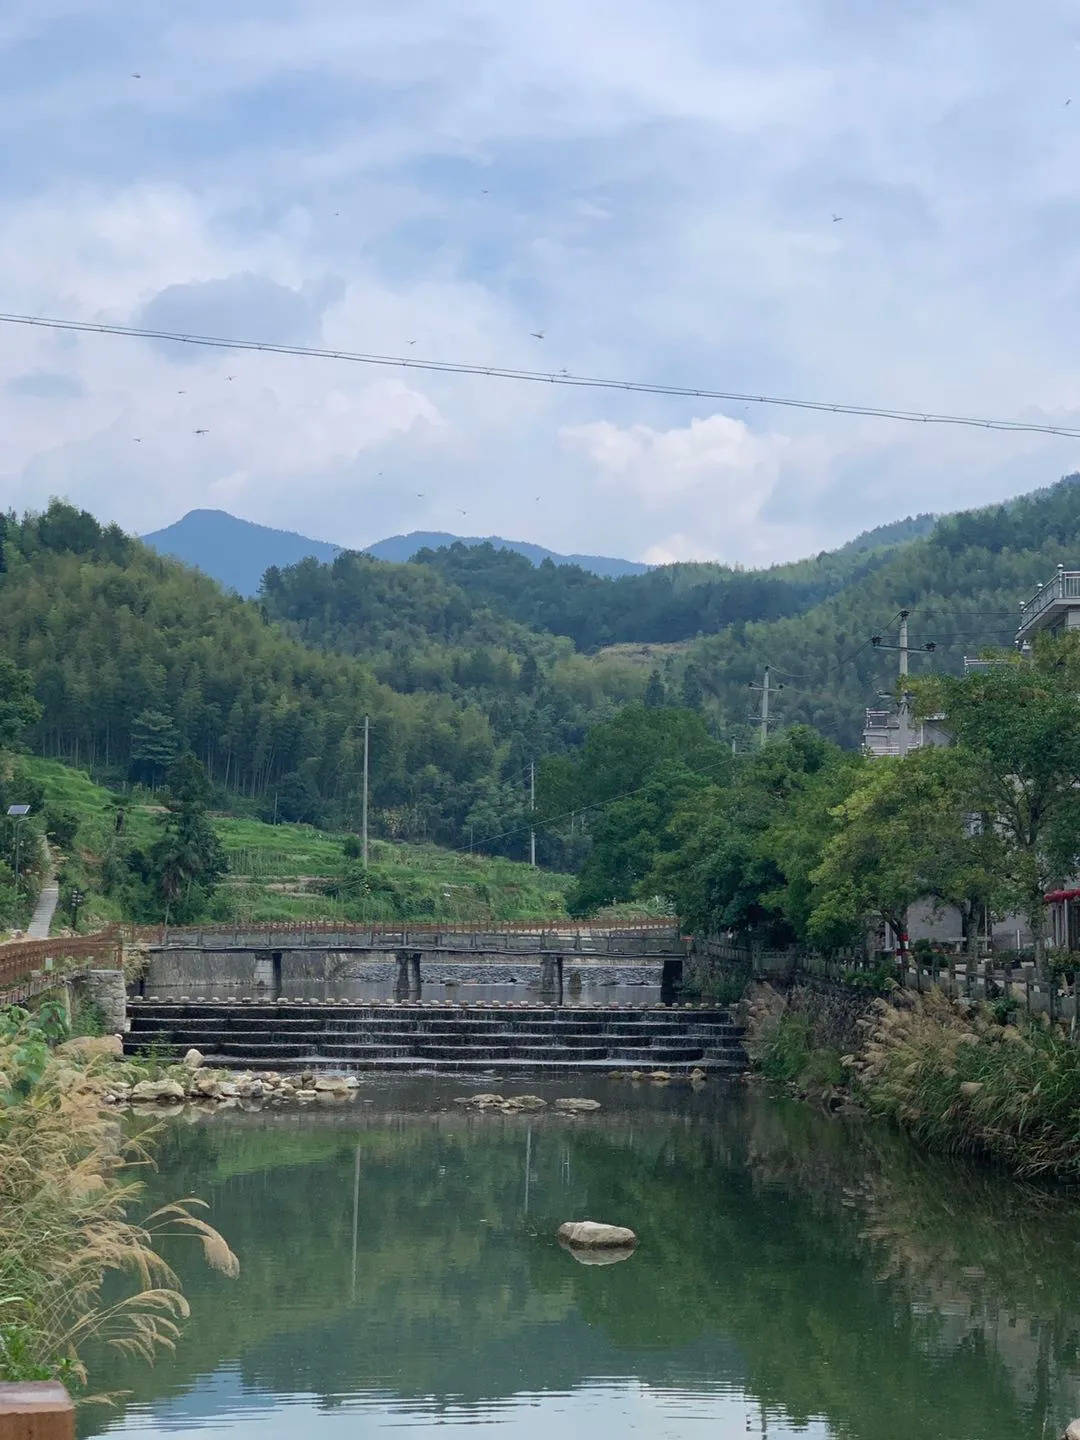 原创浙江有个名不见经传的小村落，夏天却可以美得不输九寨沟